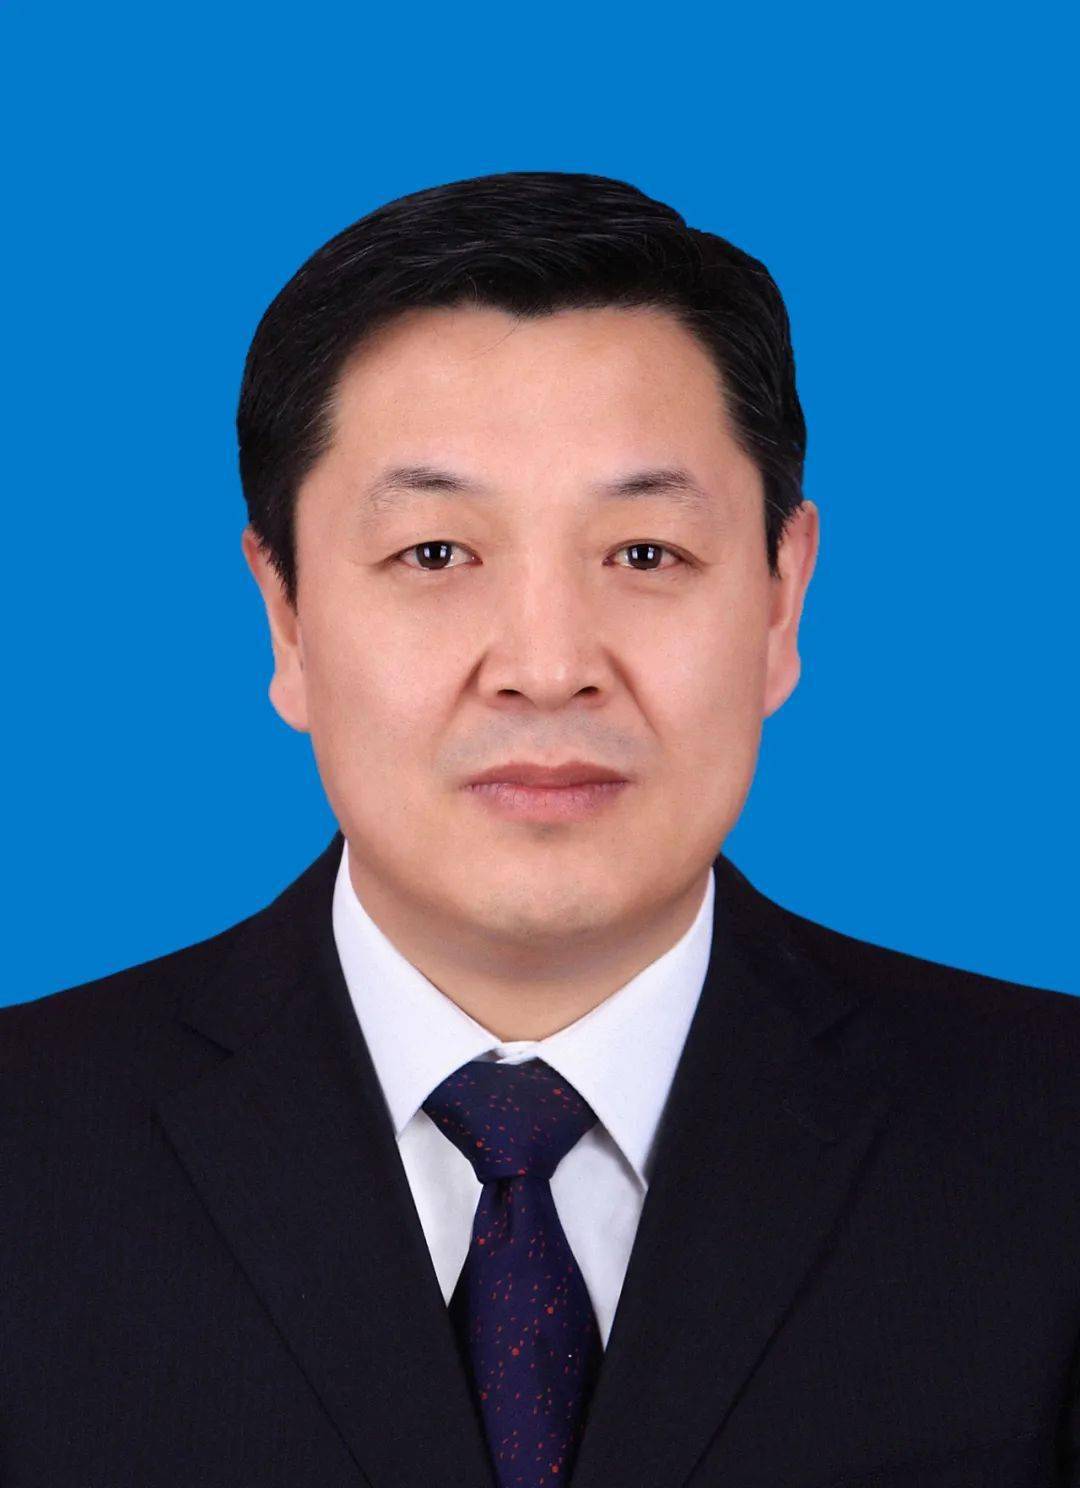 陆文龙陆文龙,男,汉族,1966年11月生,省委党校在职大学,中共党员,现任